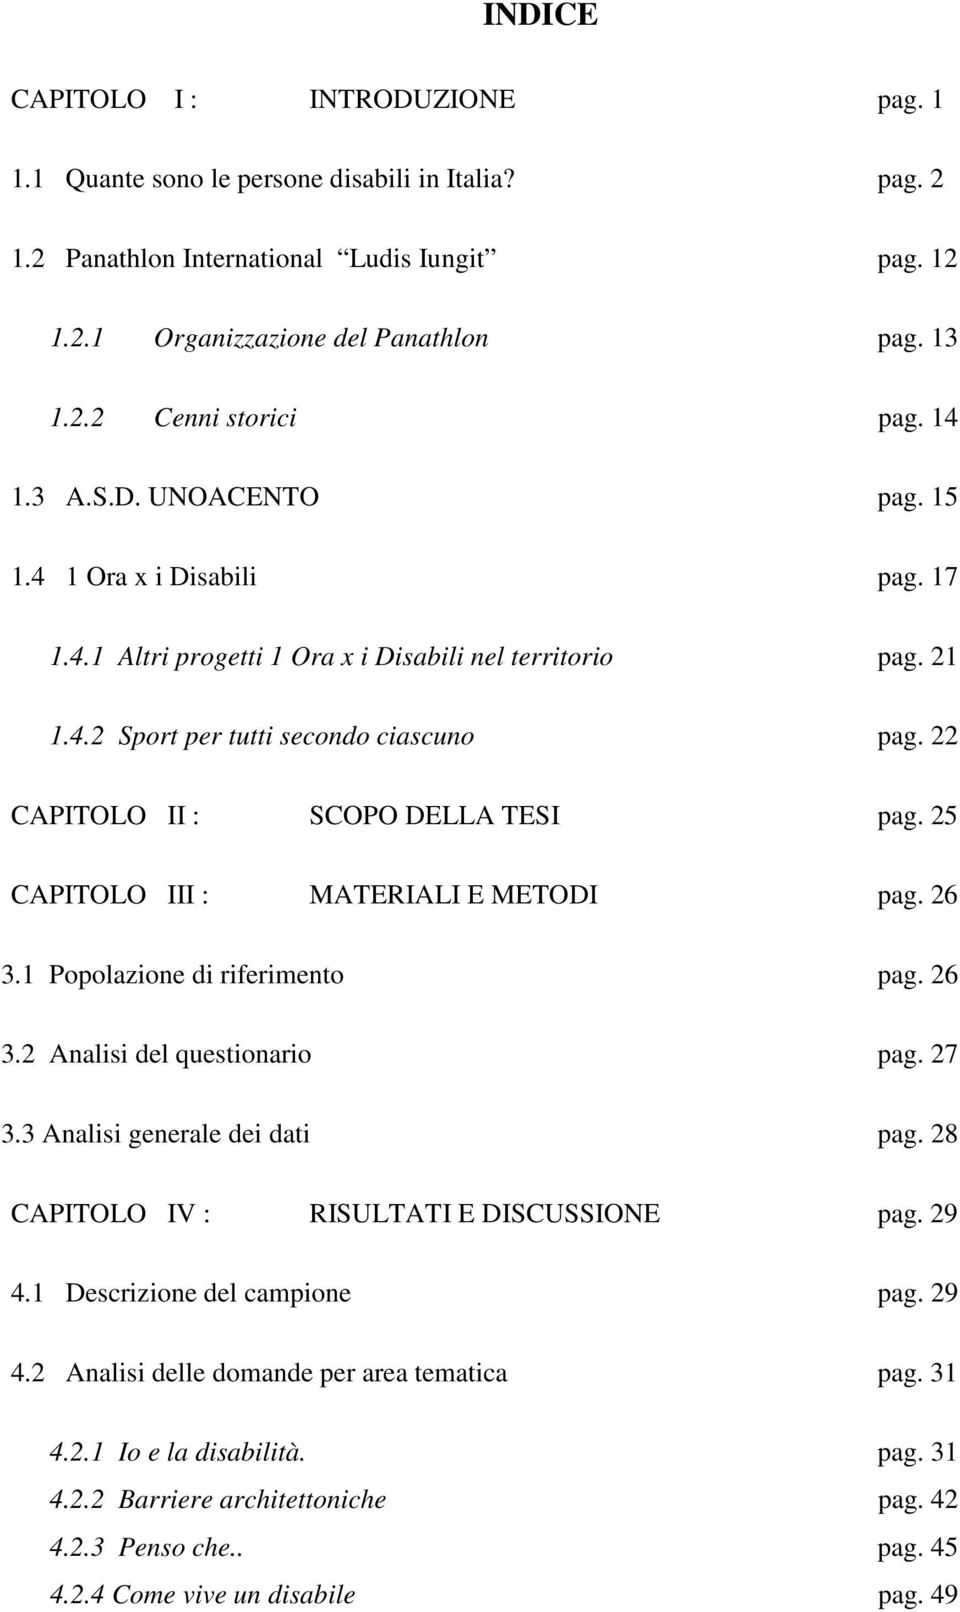 25 CAPITOLO III : MATERIALI E METODI pg. 26 3.1 Popolzione di riferimento pg. 26 3.2 Anlisi del questionrio pg. 27 3.3 Anlisi generle dei dti pg. 28 CAPITOLO IV : RISULTATI E DISCUSSIONE pg. 29 4.